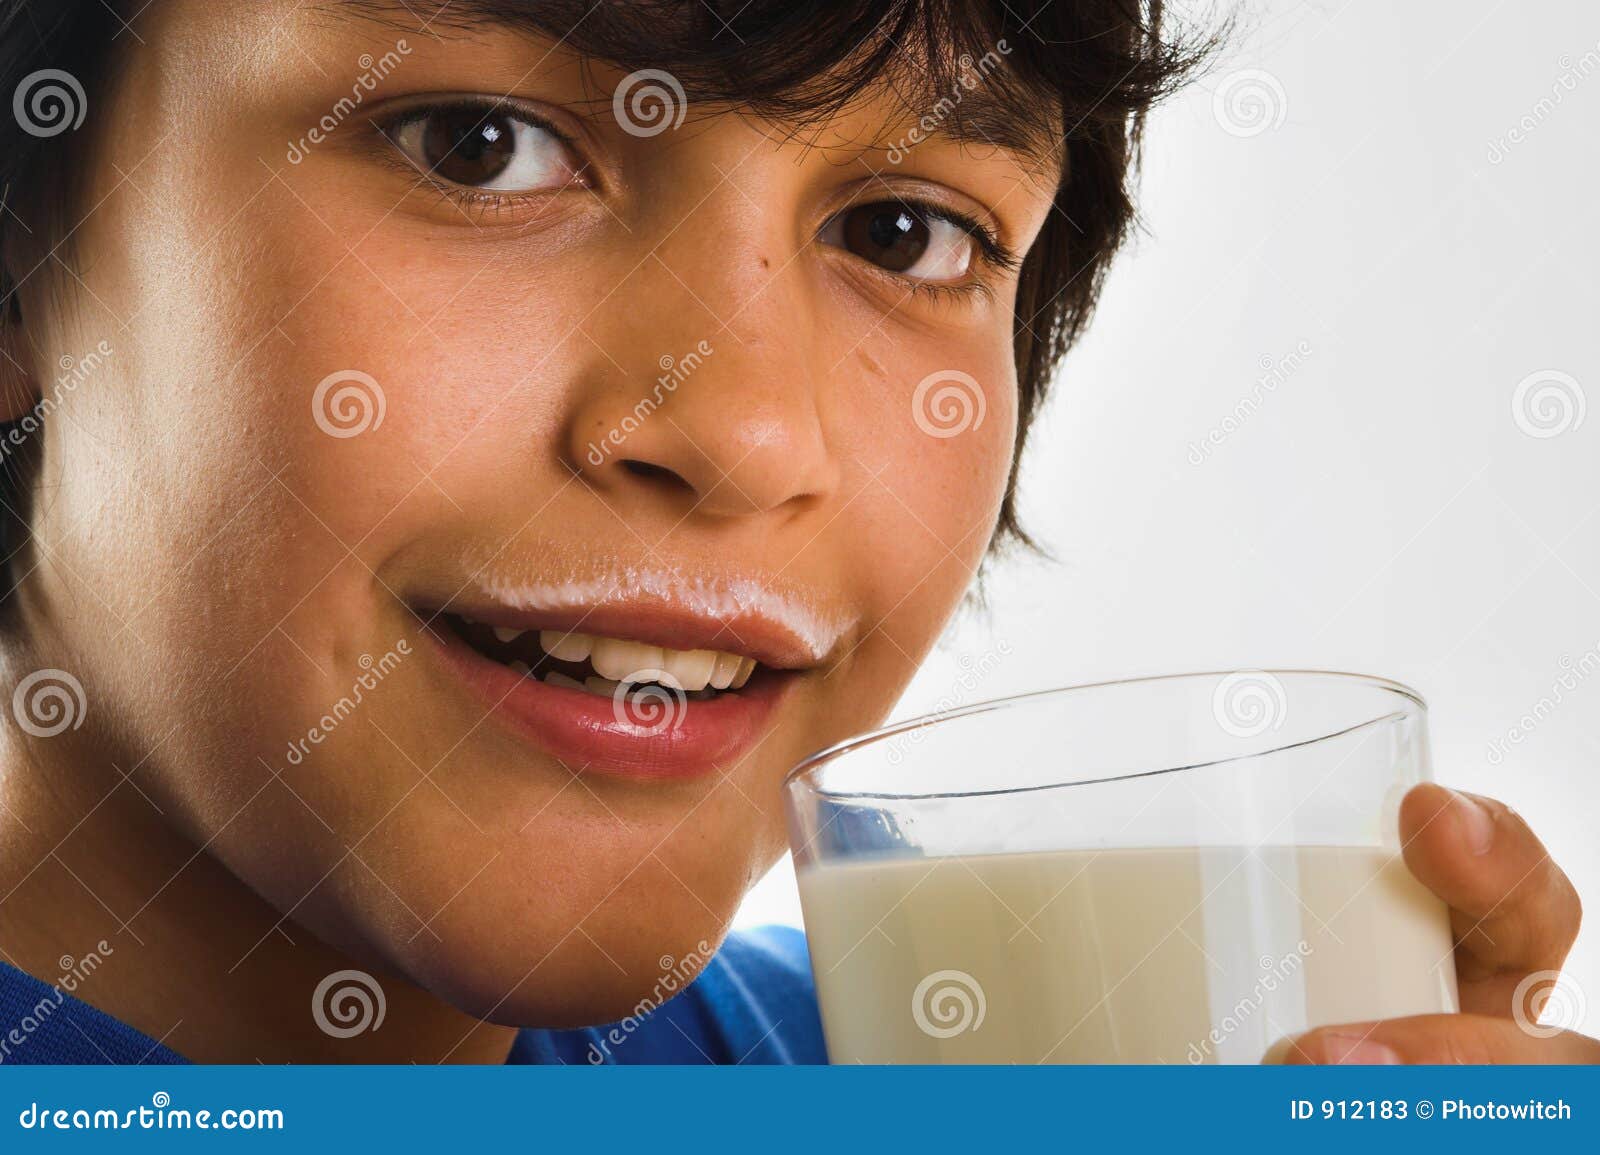 Молоко на губах не обсохло значение предложение. Молоко на губах. Молочный мальчик. Молоко на усах. Не молоко на губах.